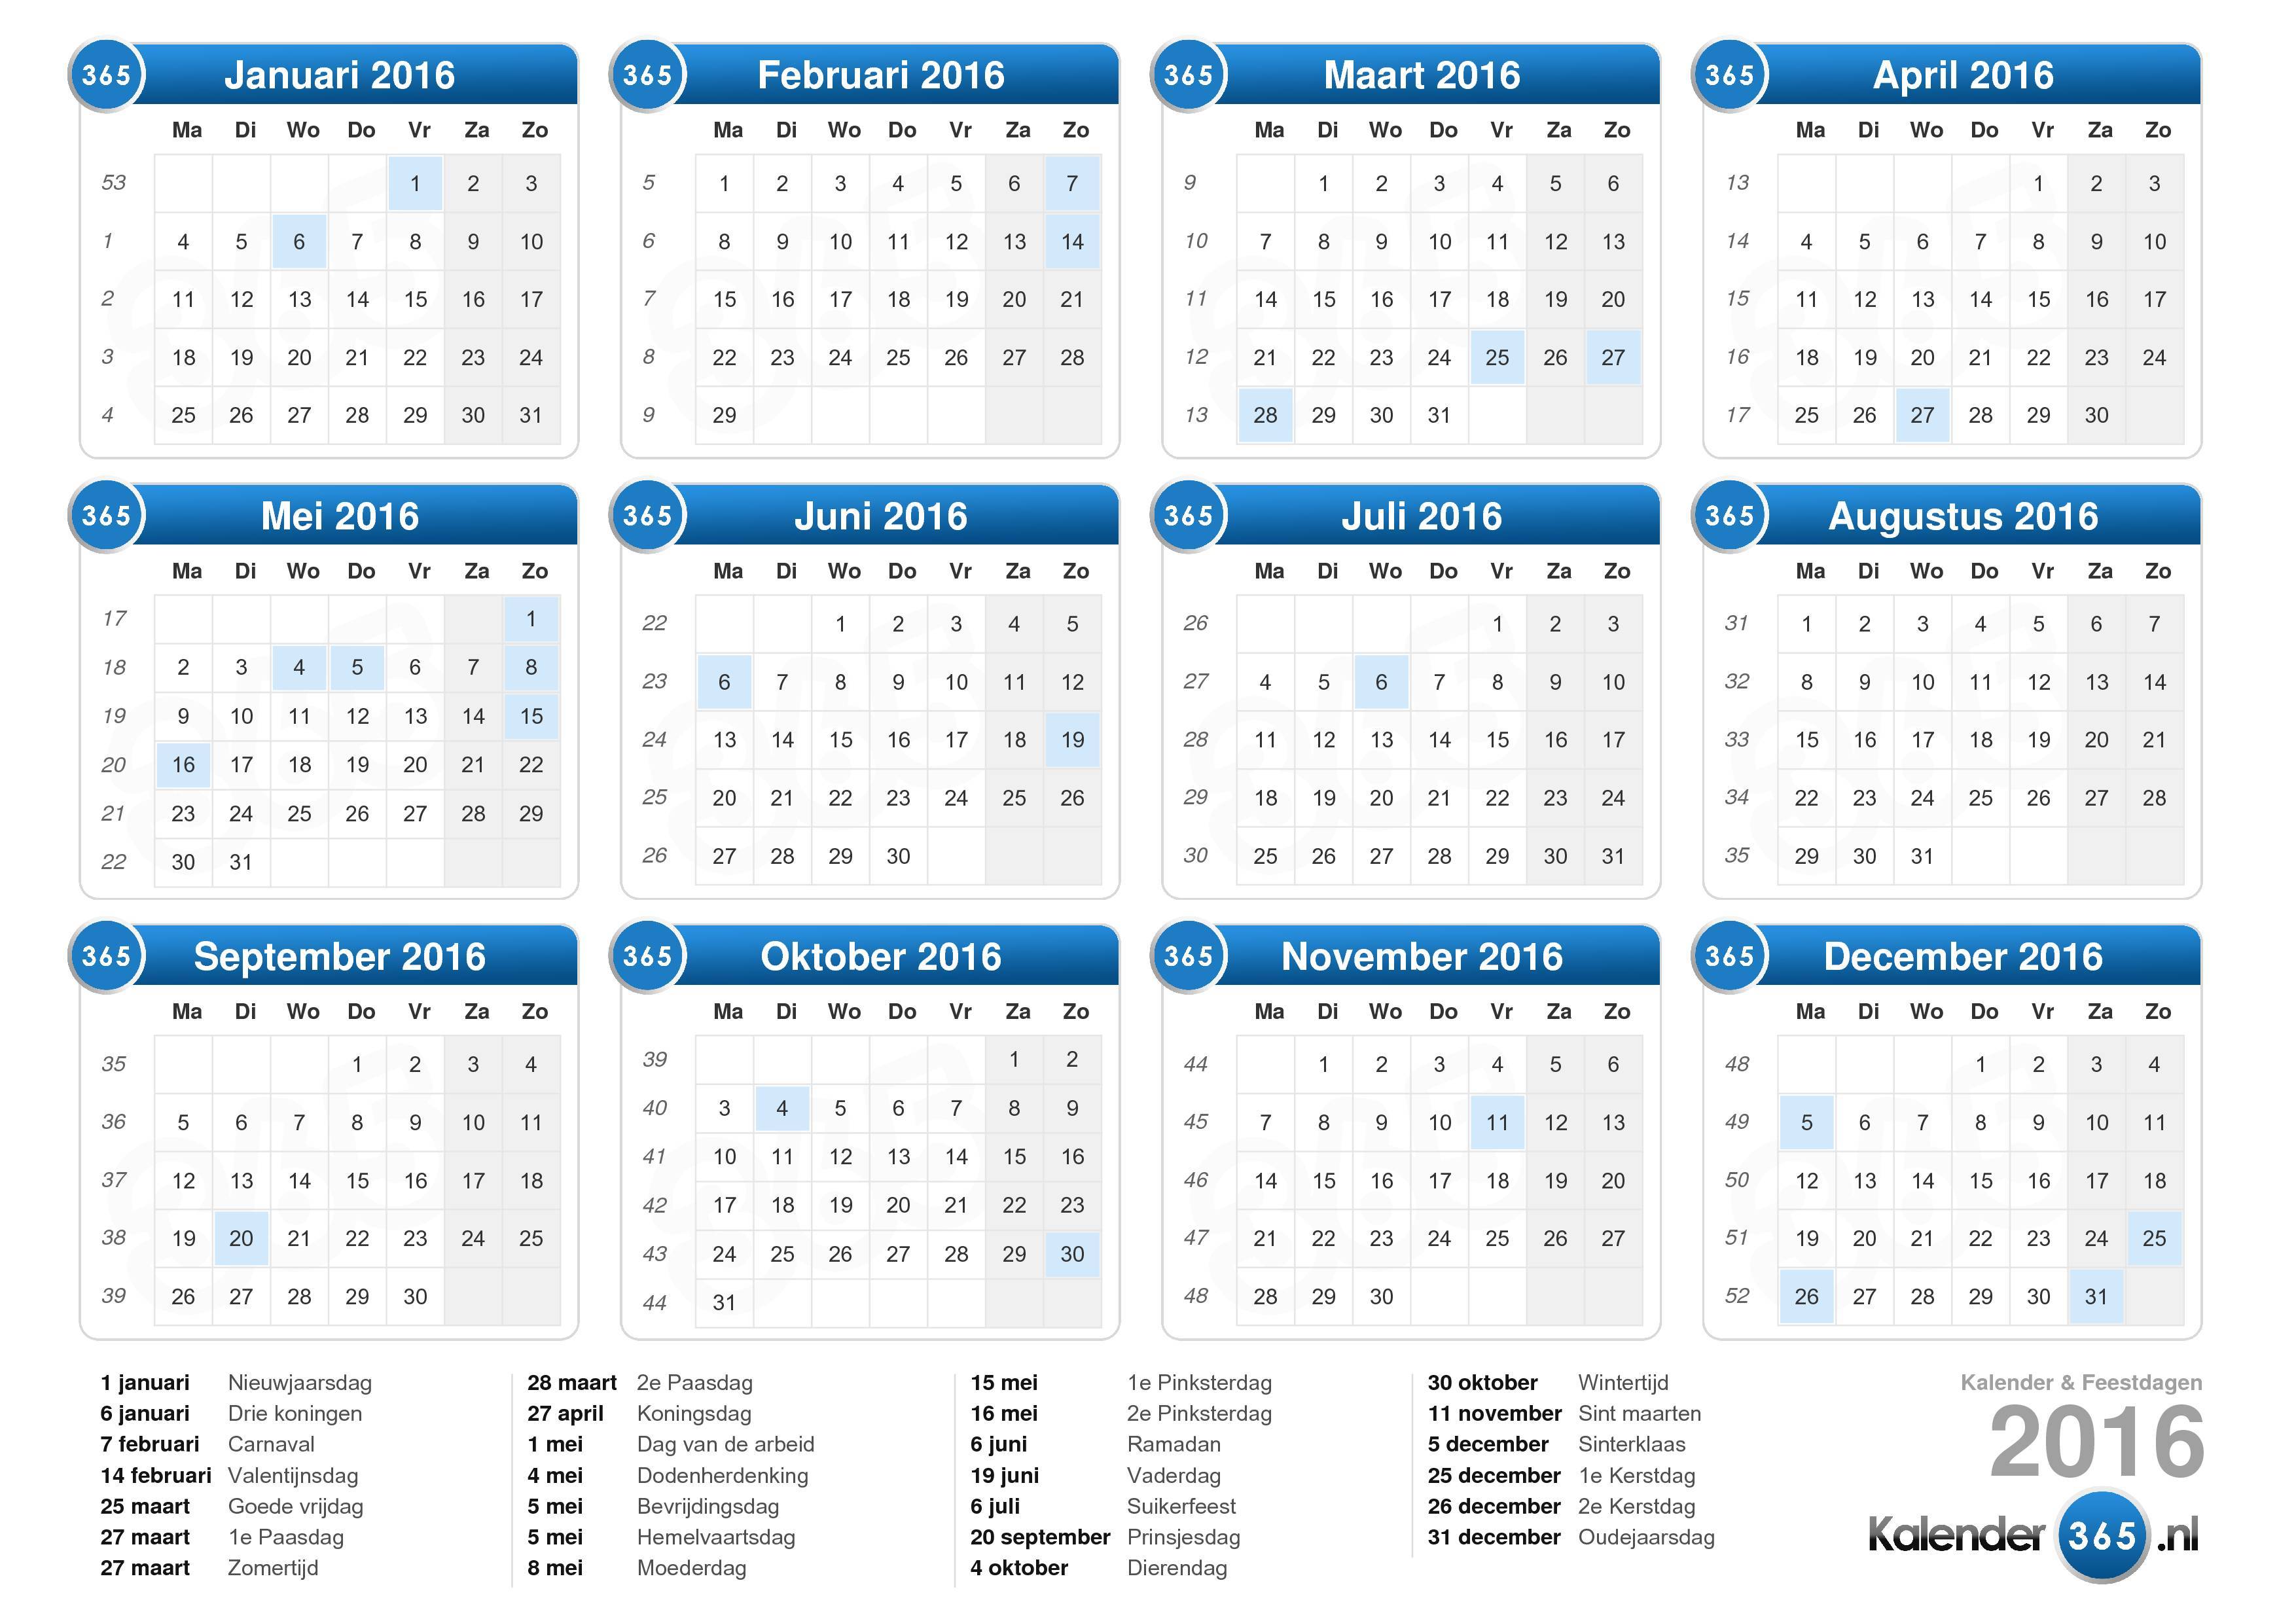 Ambtenaren ten tweede spoelen Kalender 2016